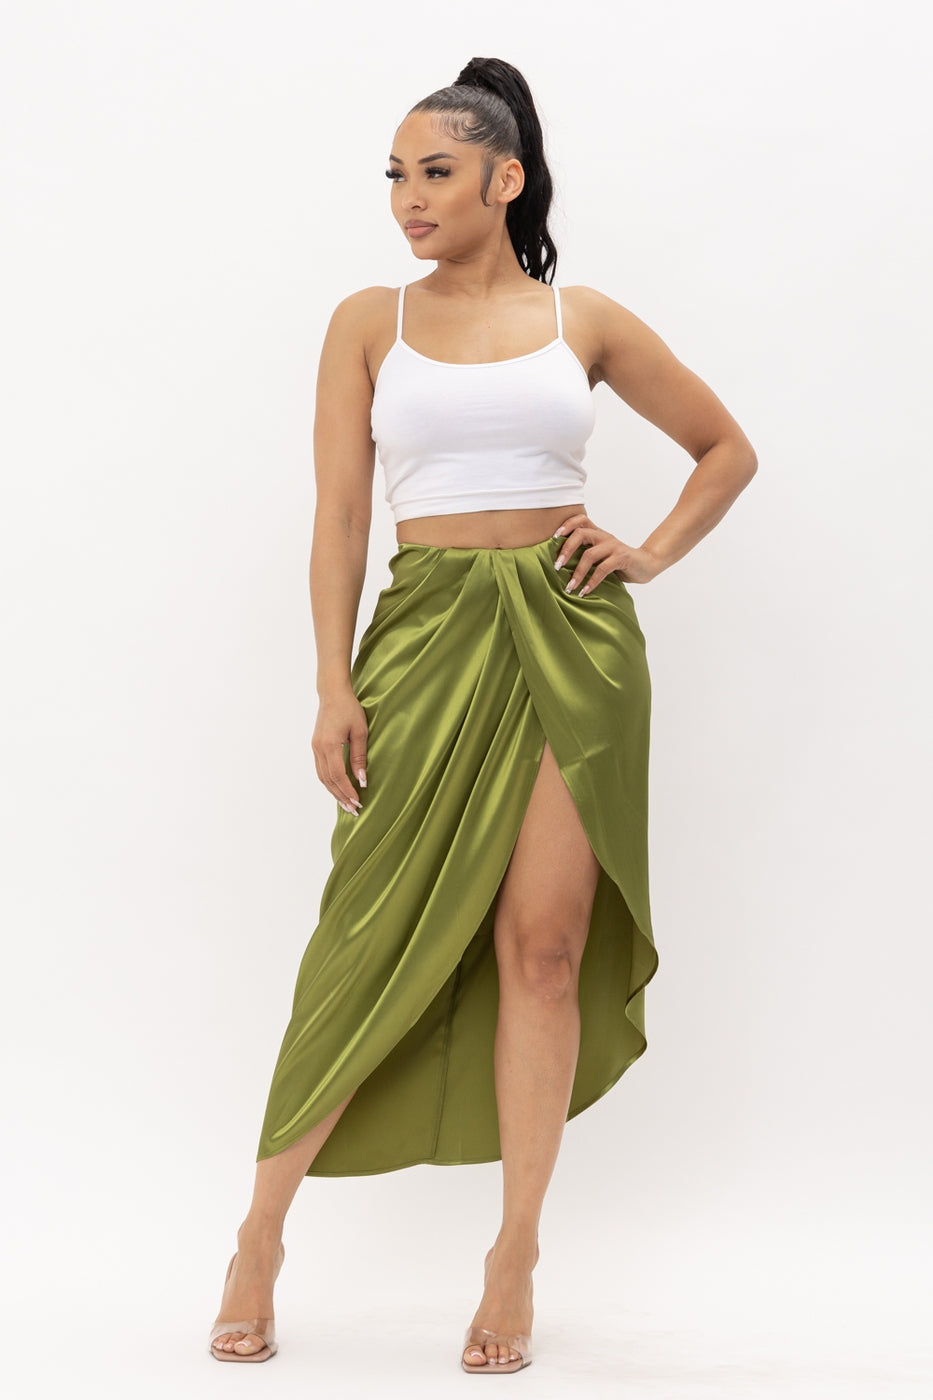 Bottoms, Women's Skirts, Wrap Skirt, Green Skirt, Olive Green, Satin Skirt